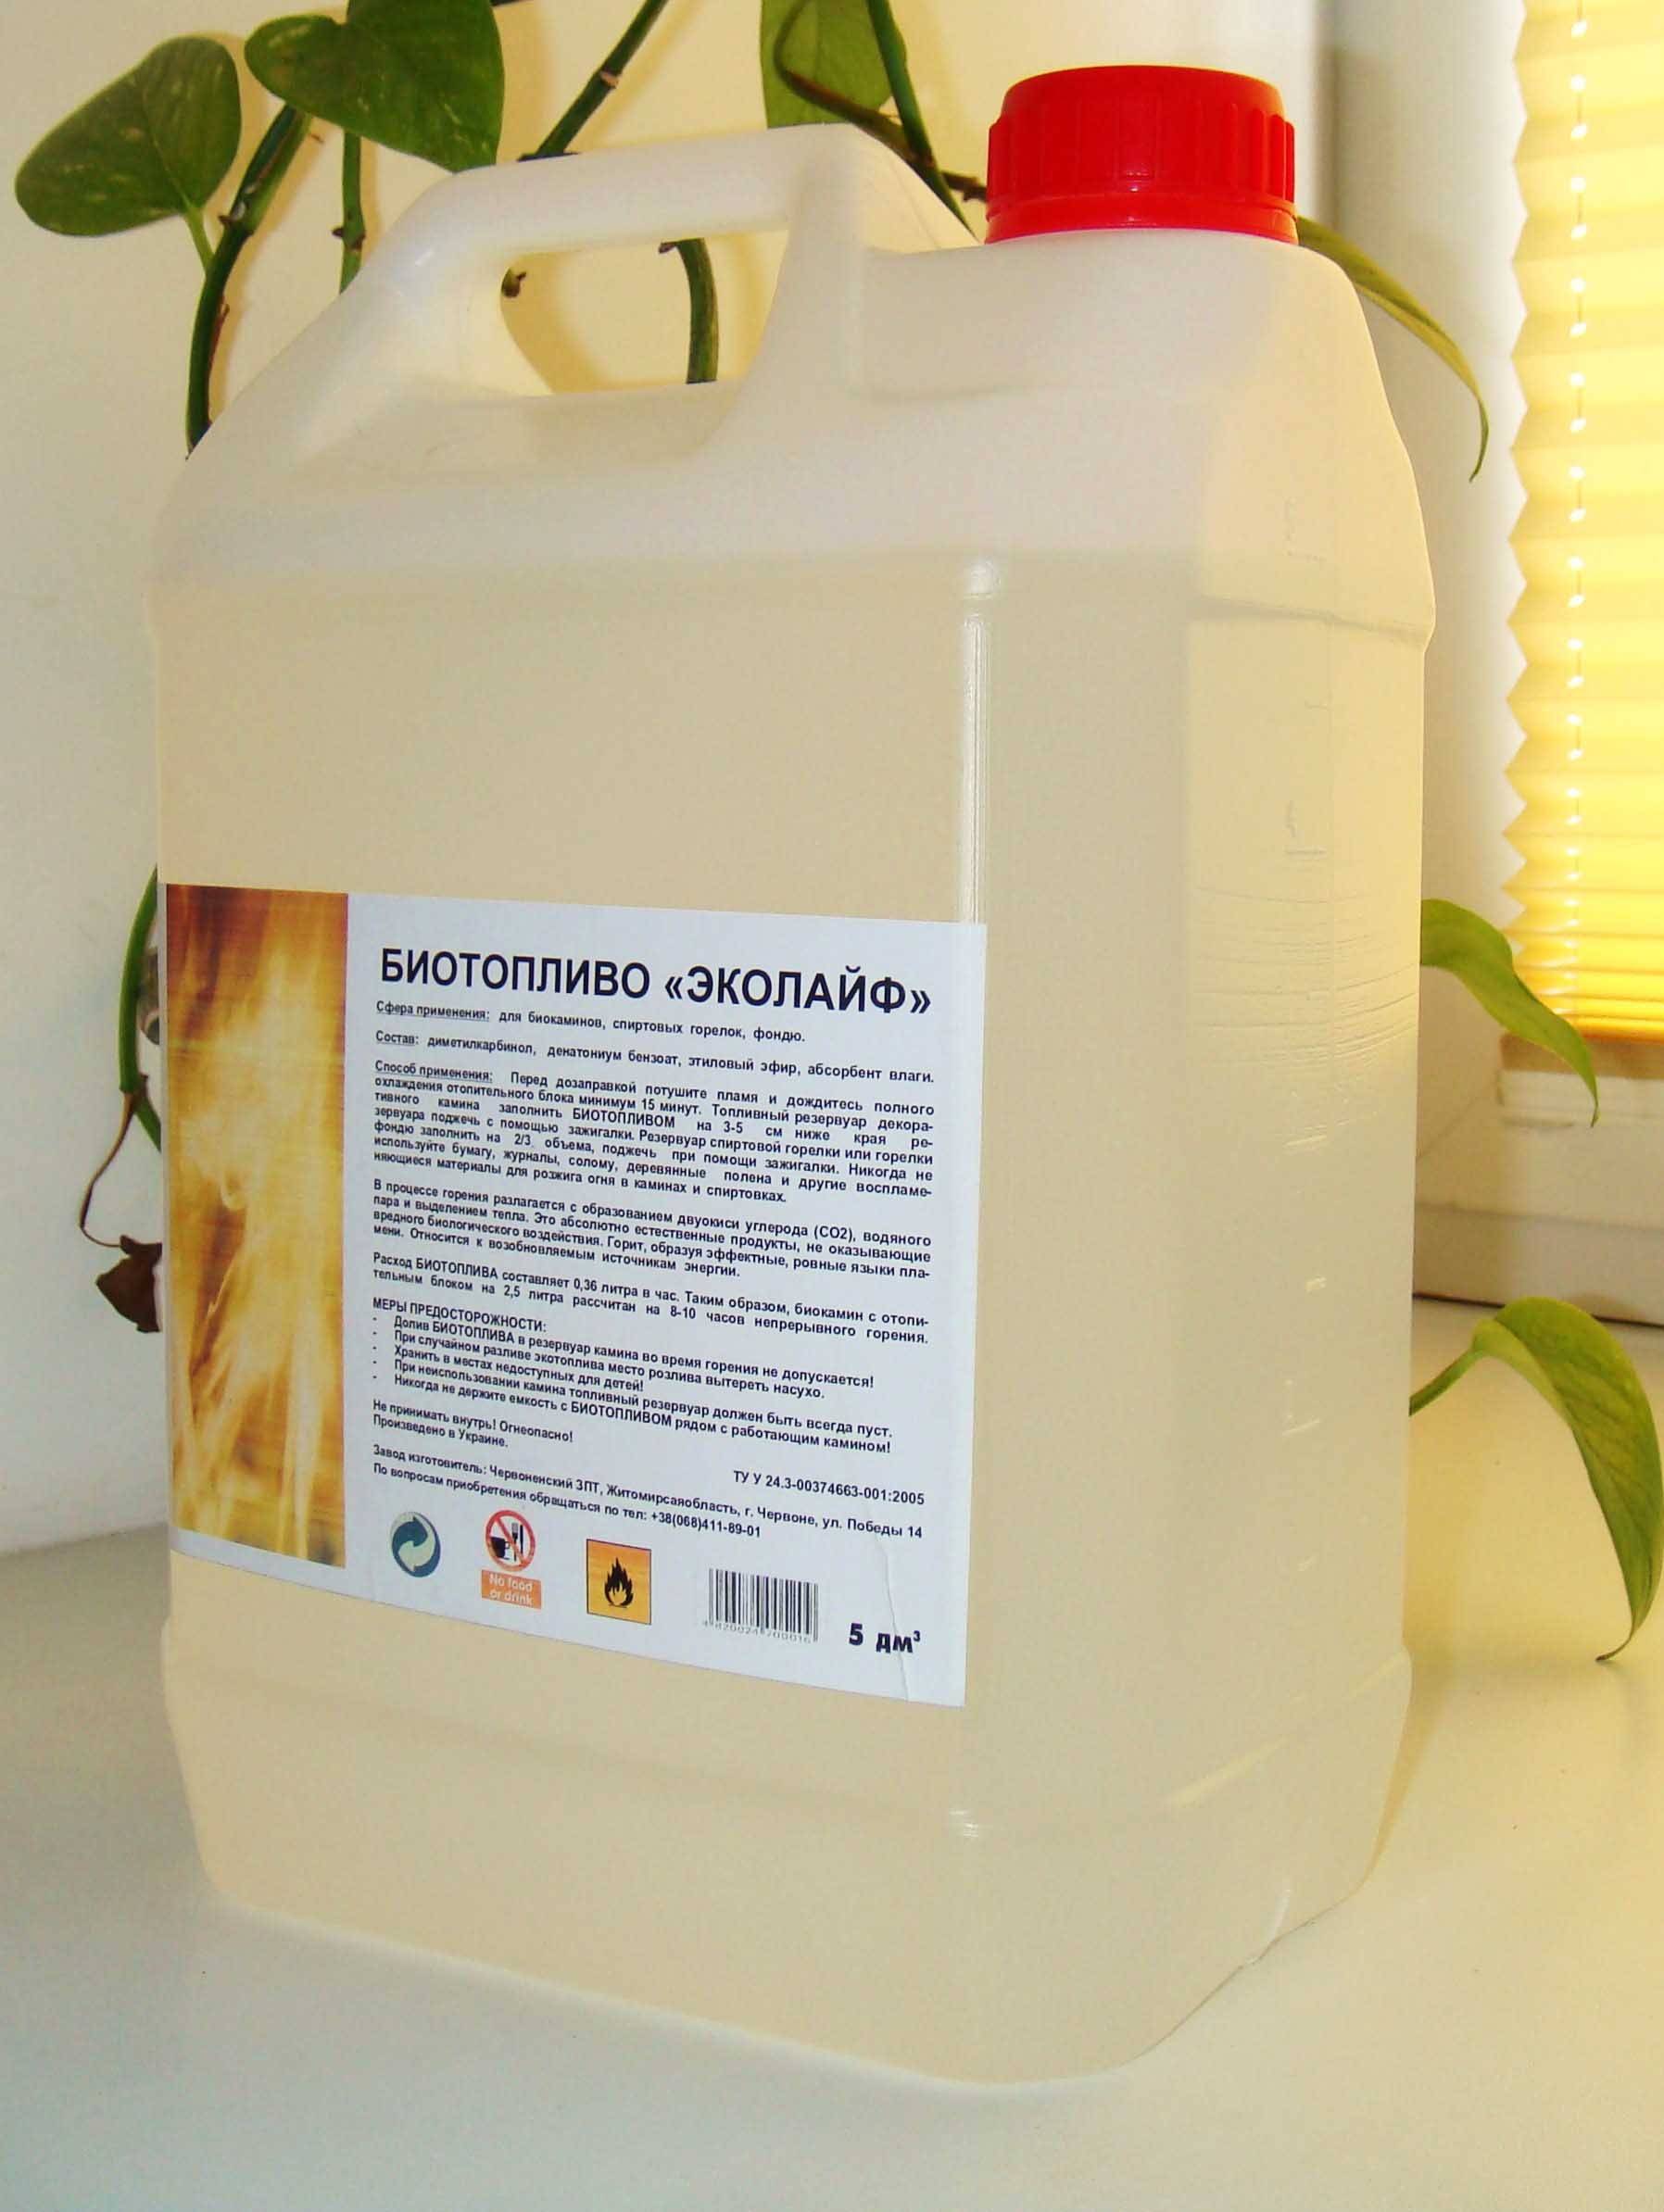 Биотопливо: состав, расход и правила применения. где недорого купить или заказать биотопливо с доставкой.